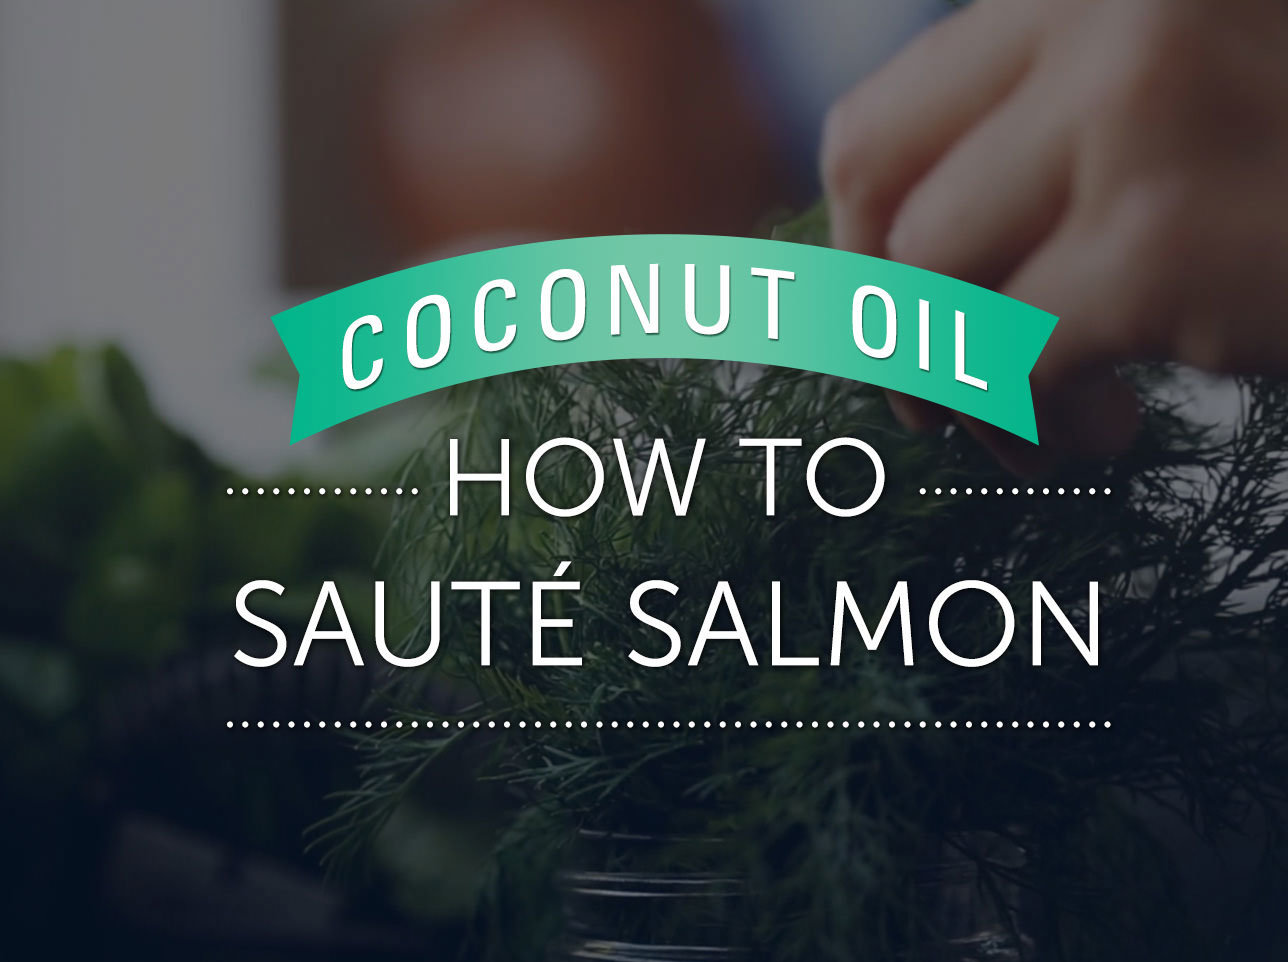 Learn how to sauté salmon with LouAna Coconut Oil.